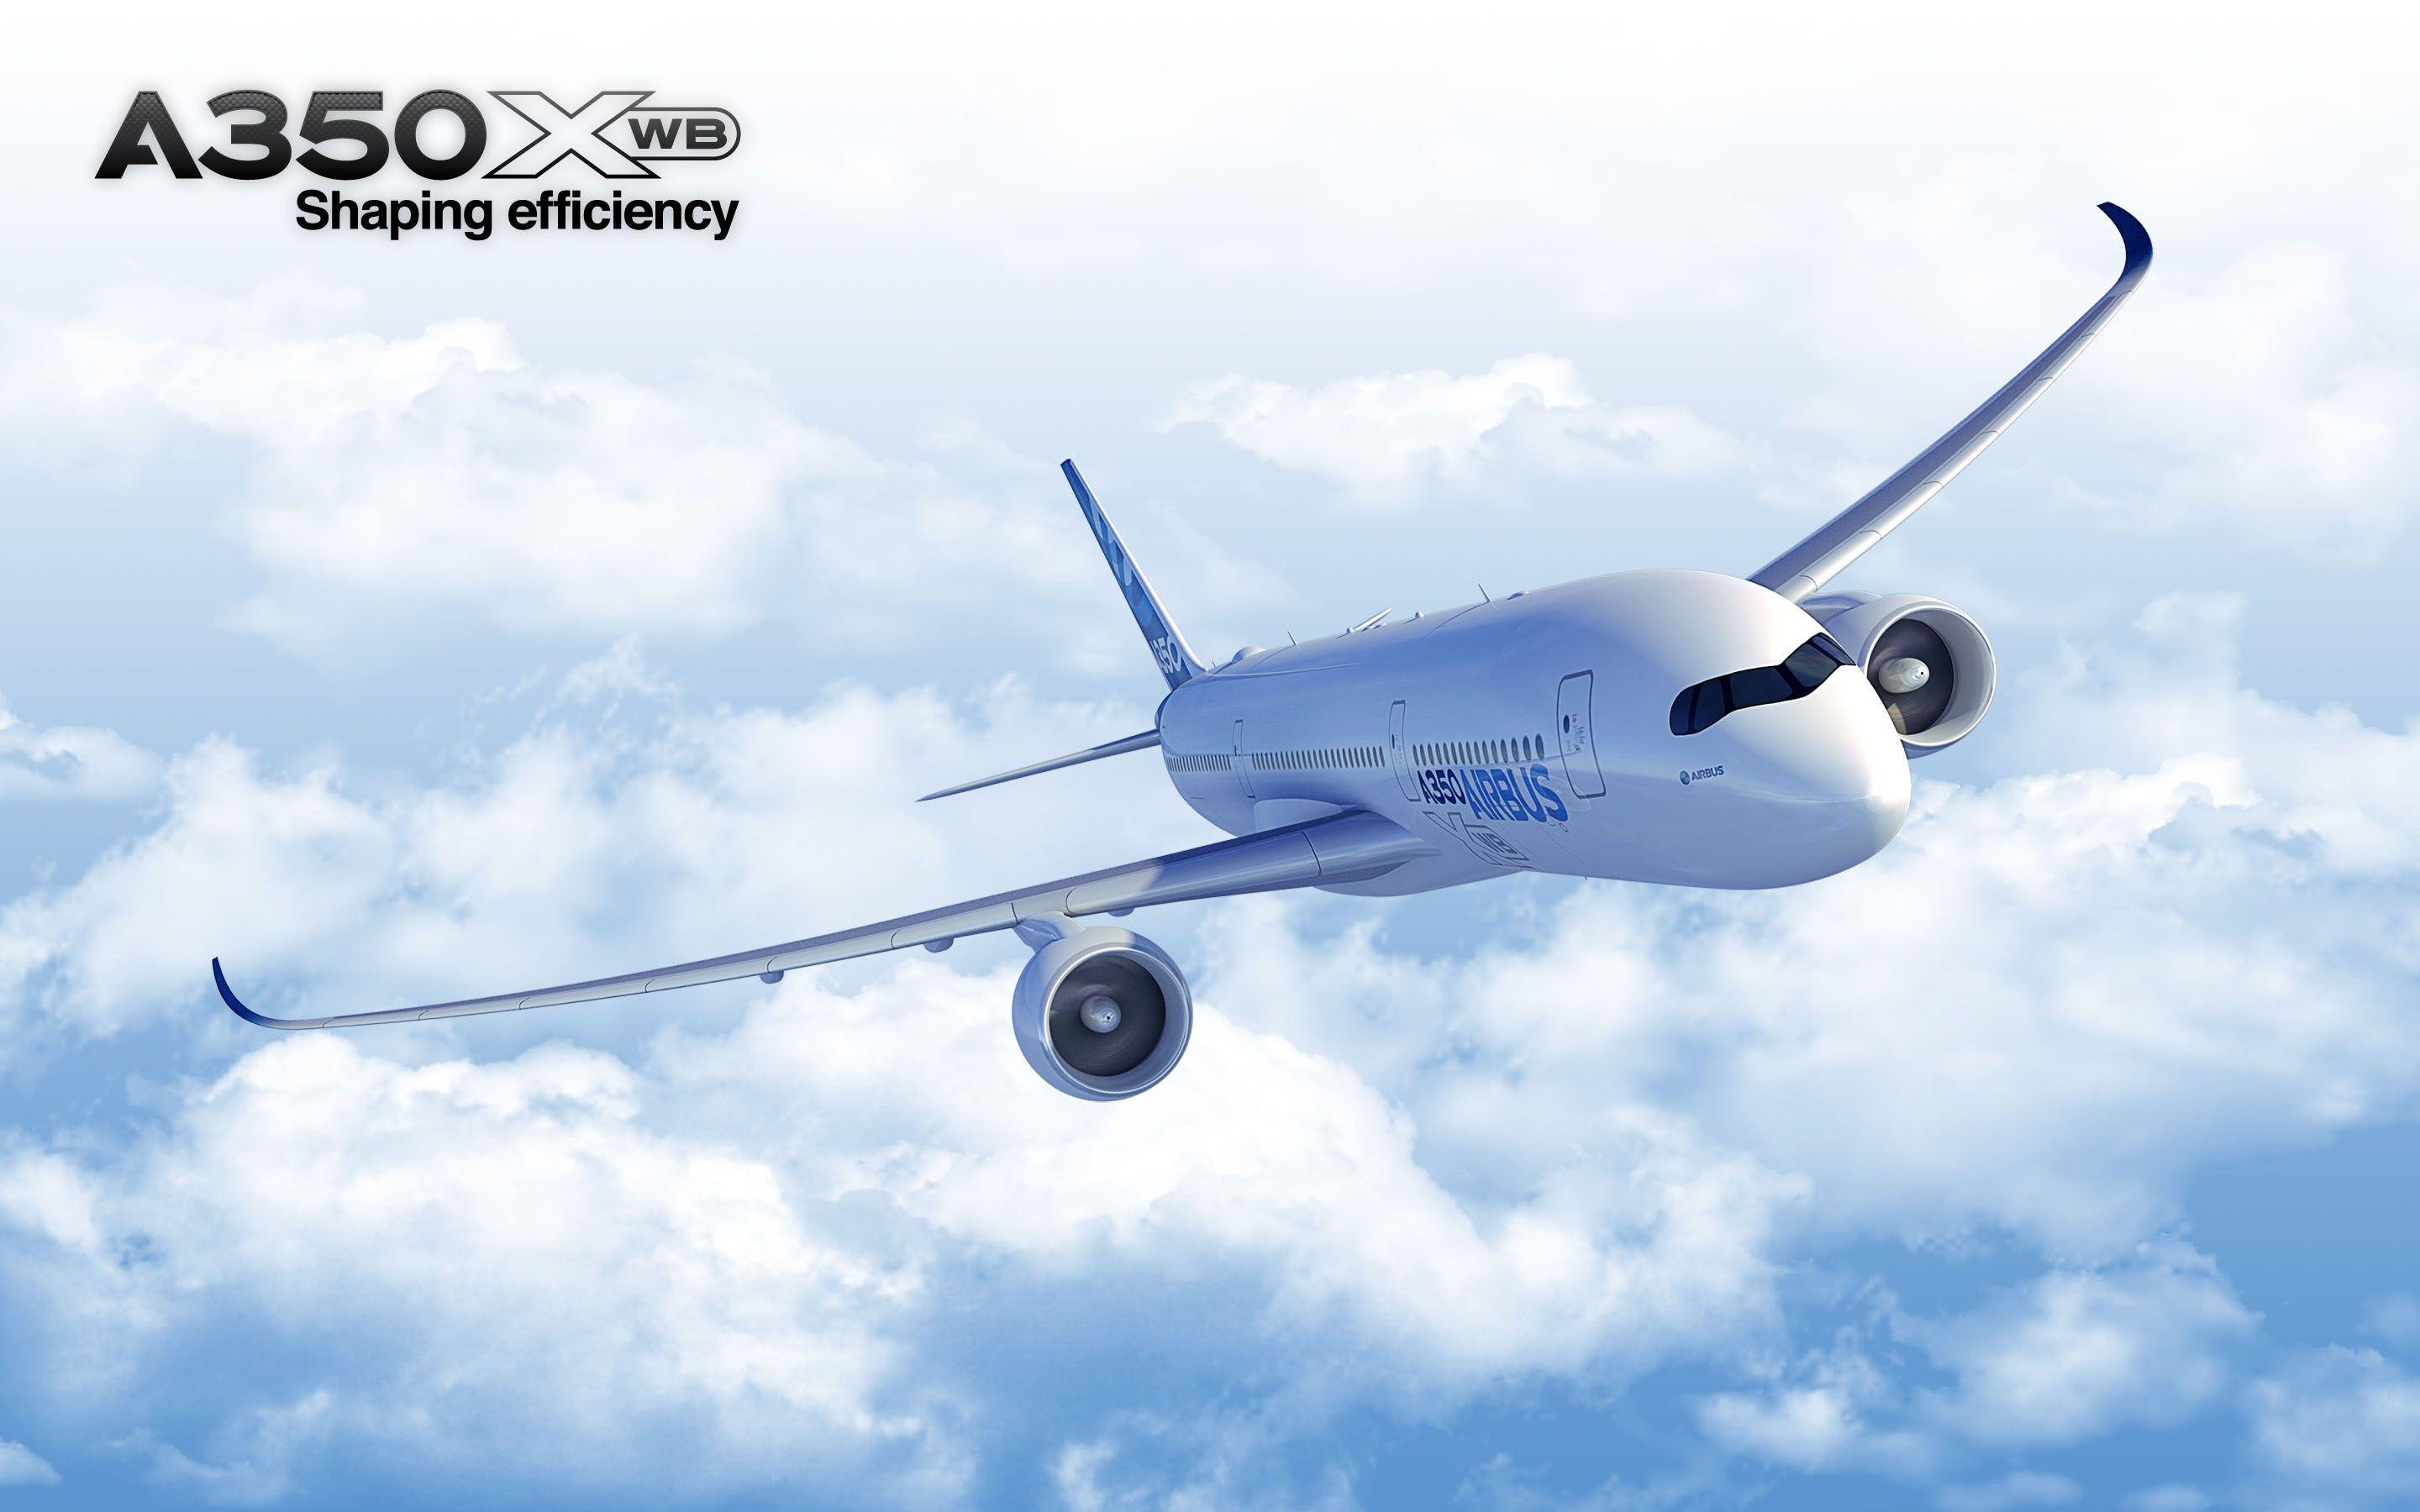 Airbus A350 XWB Shaping efficiency